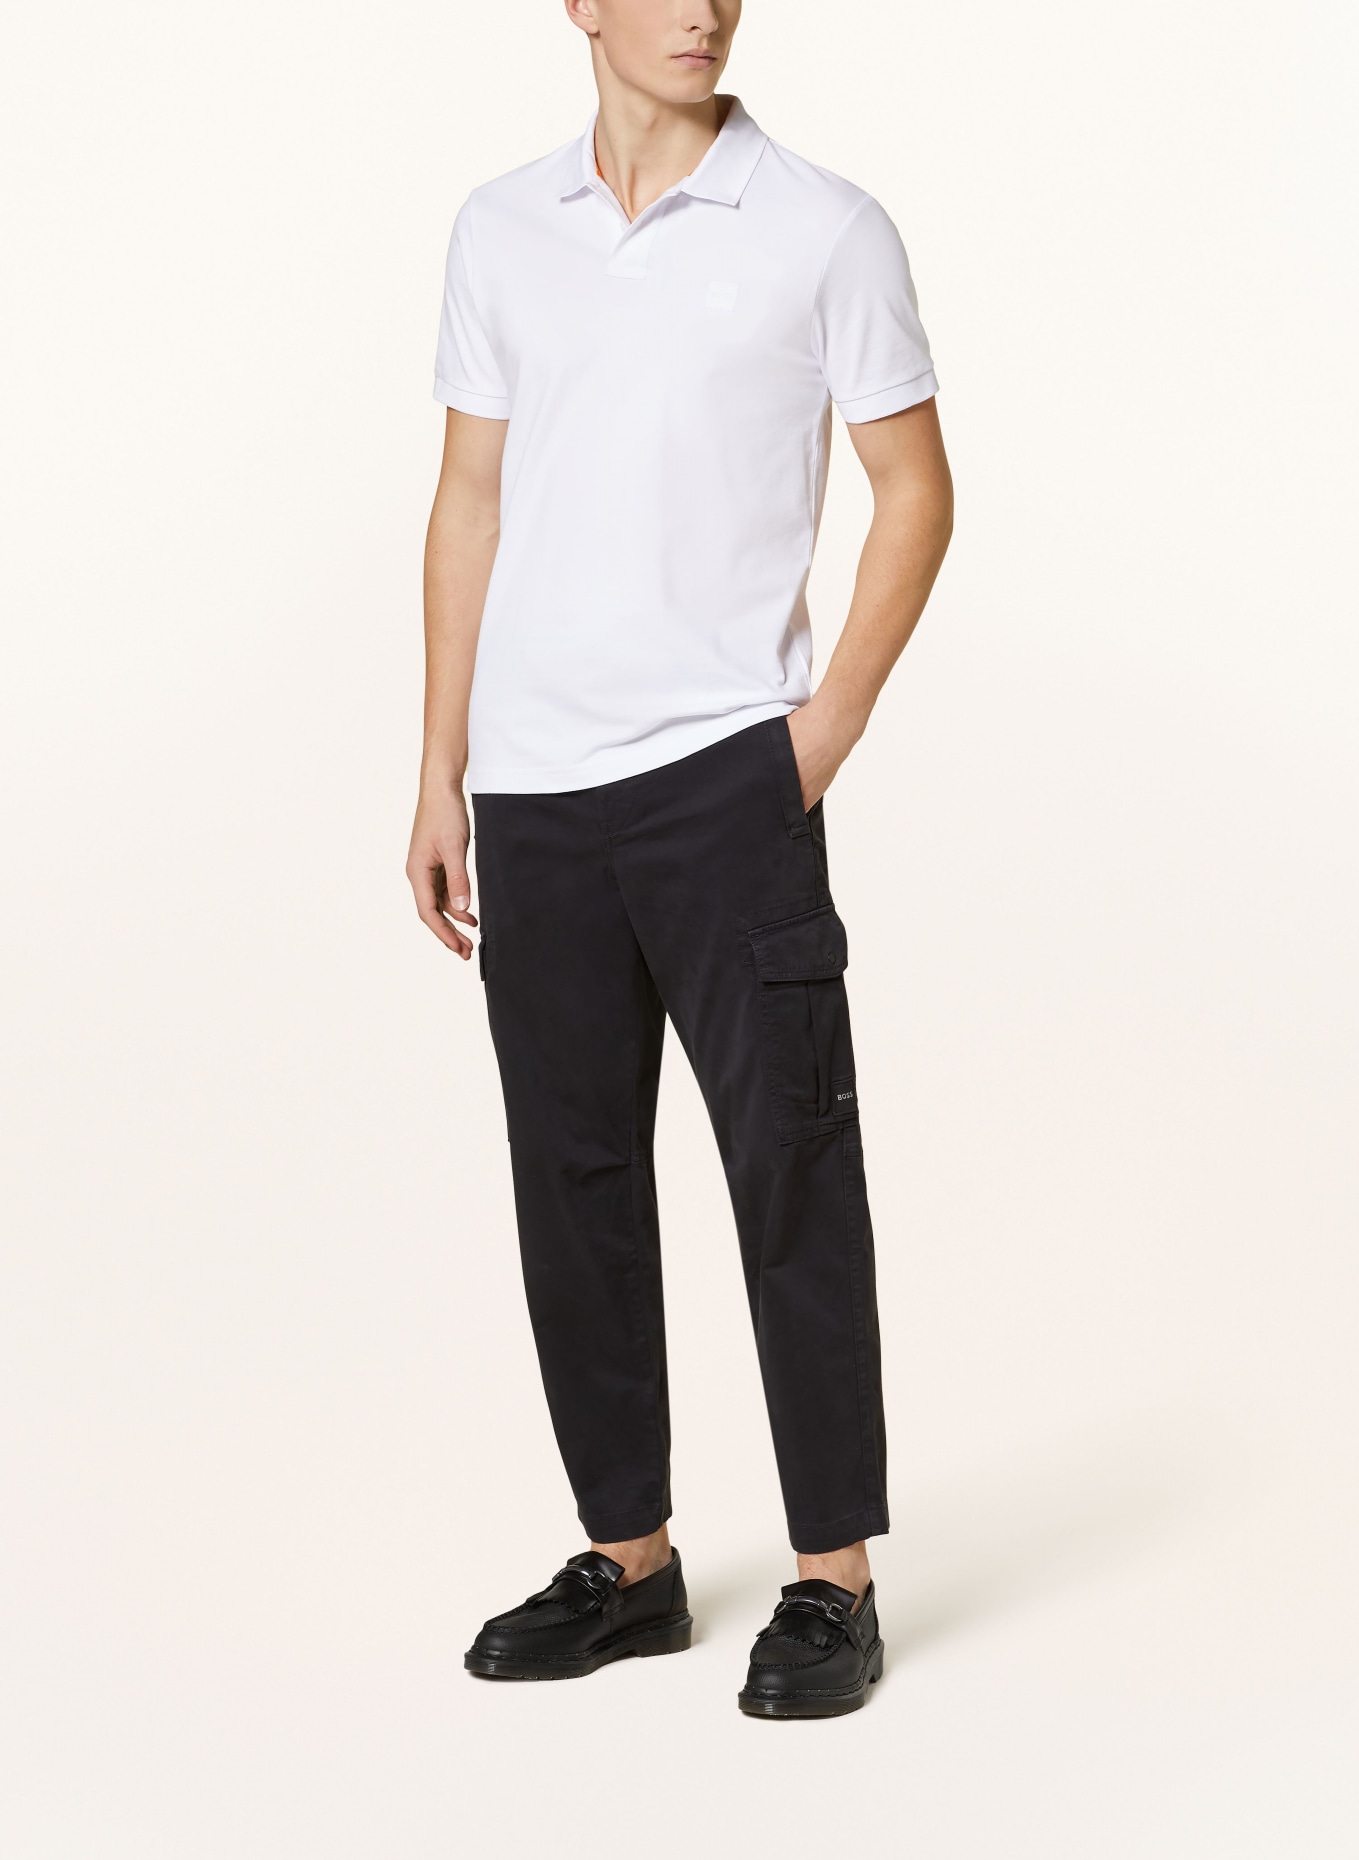 BOSS Piqué-Poloshirt PASSENGER Slim Fit, Farbe: WEISS (Bild 2)